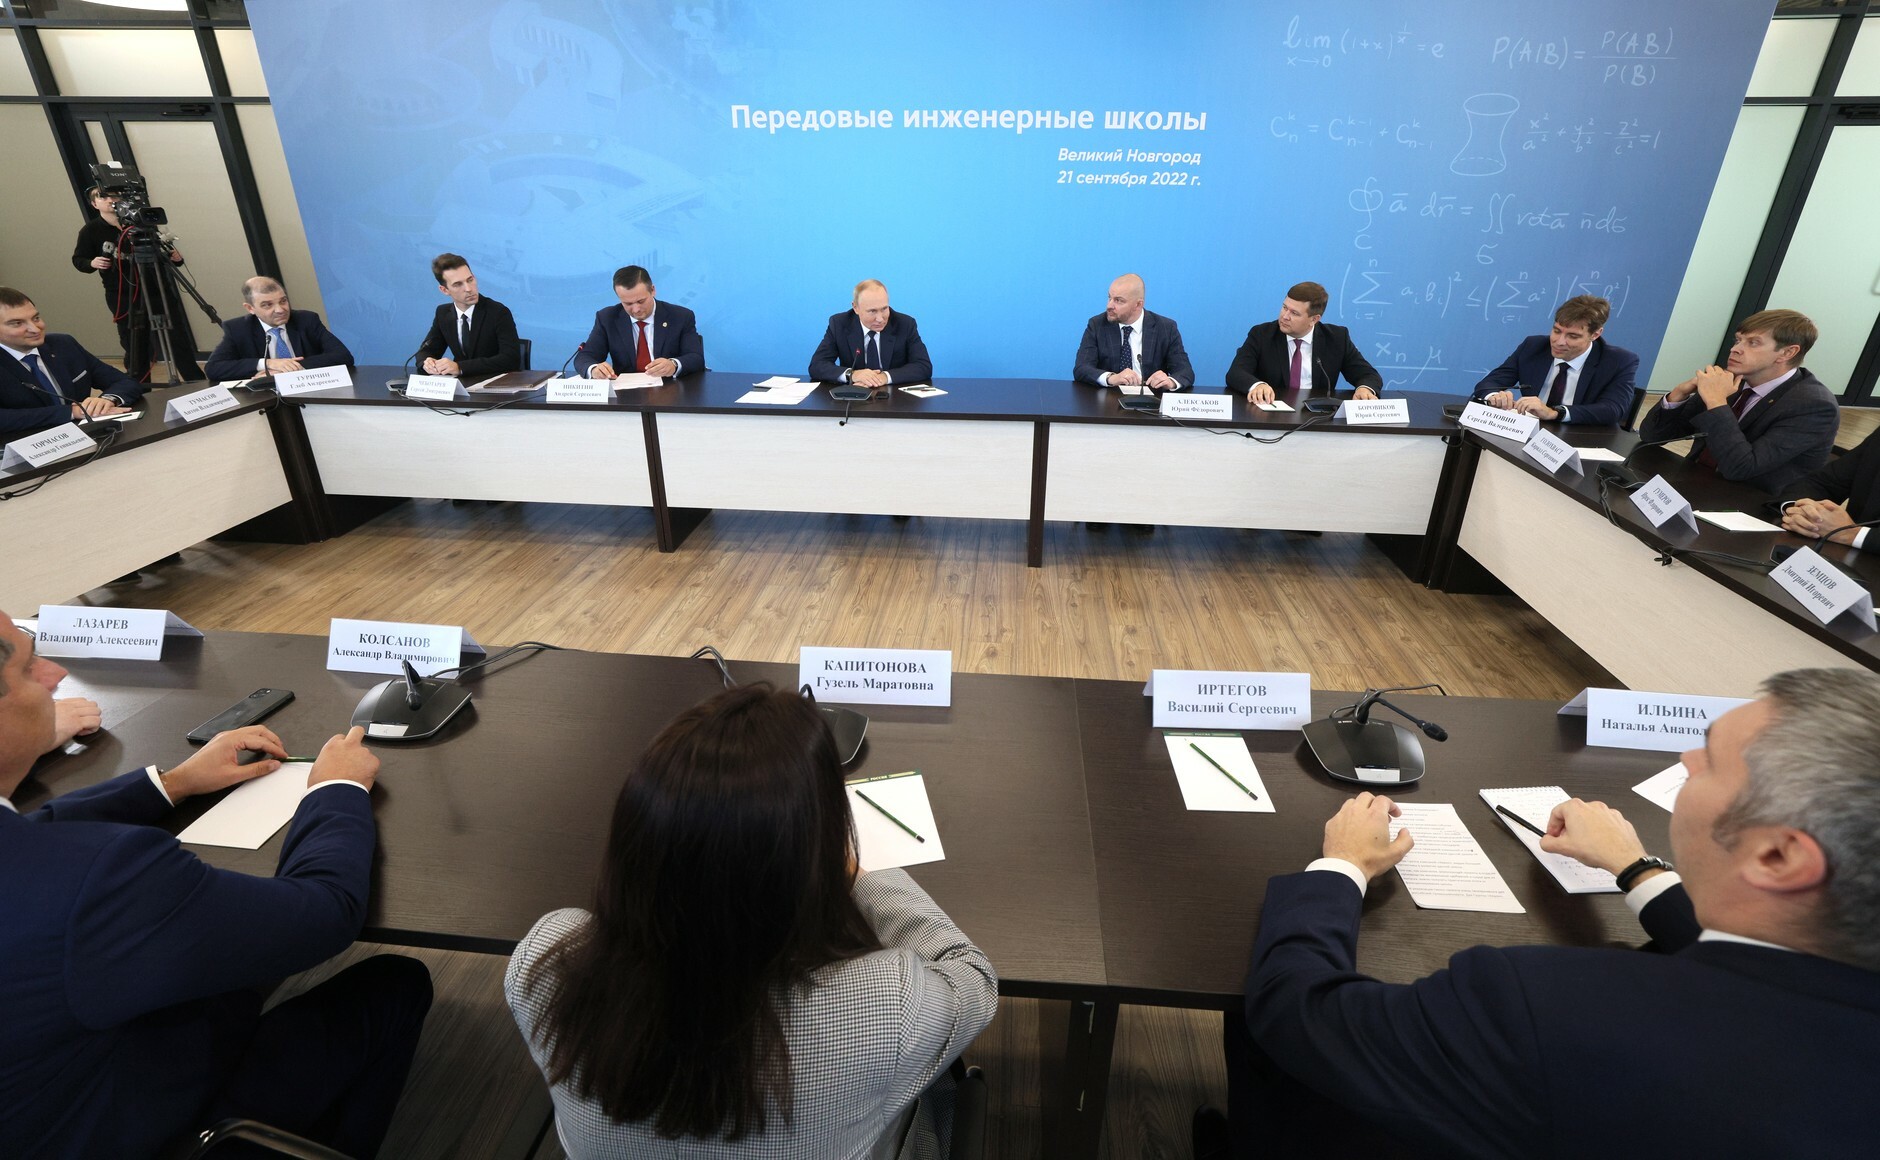 Владимир Путин встретился с руководителями передовых инженерных школ и их индустриальными партнёрами